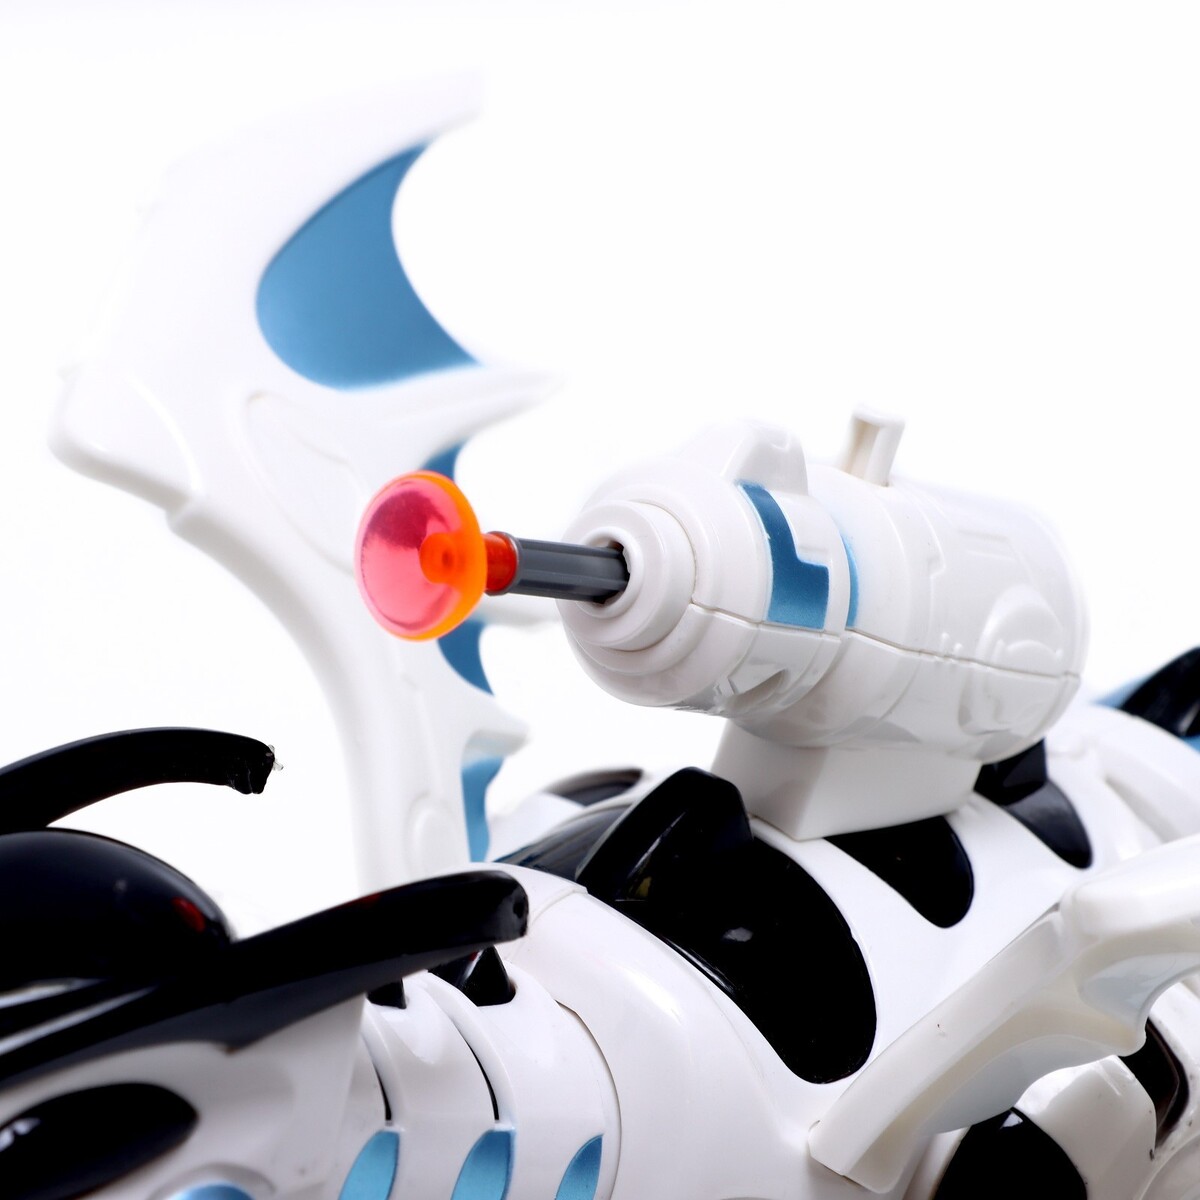 фото Робот дракон dinorex iq bot, на пульте управления, интерактивный: стреляющий, звук, на батарейках